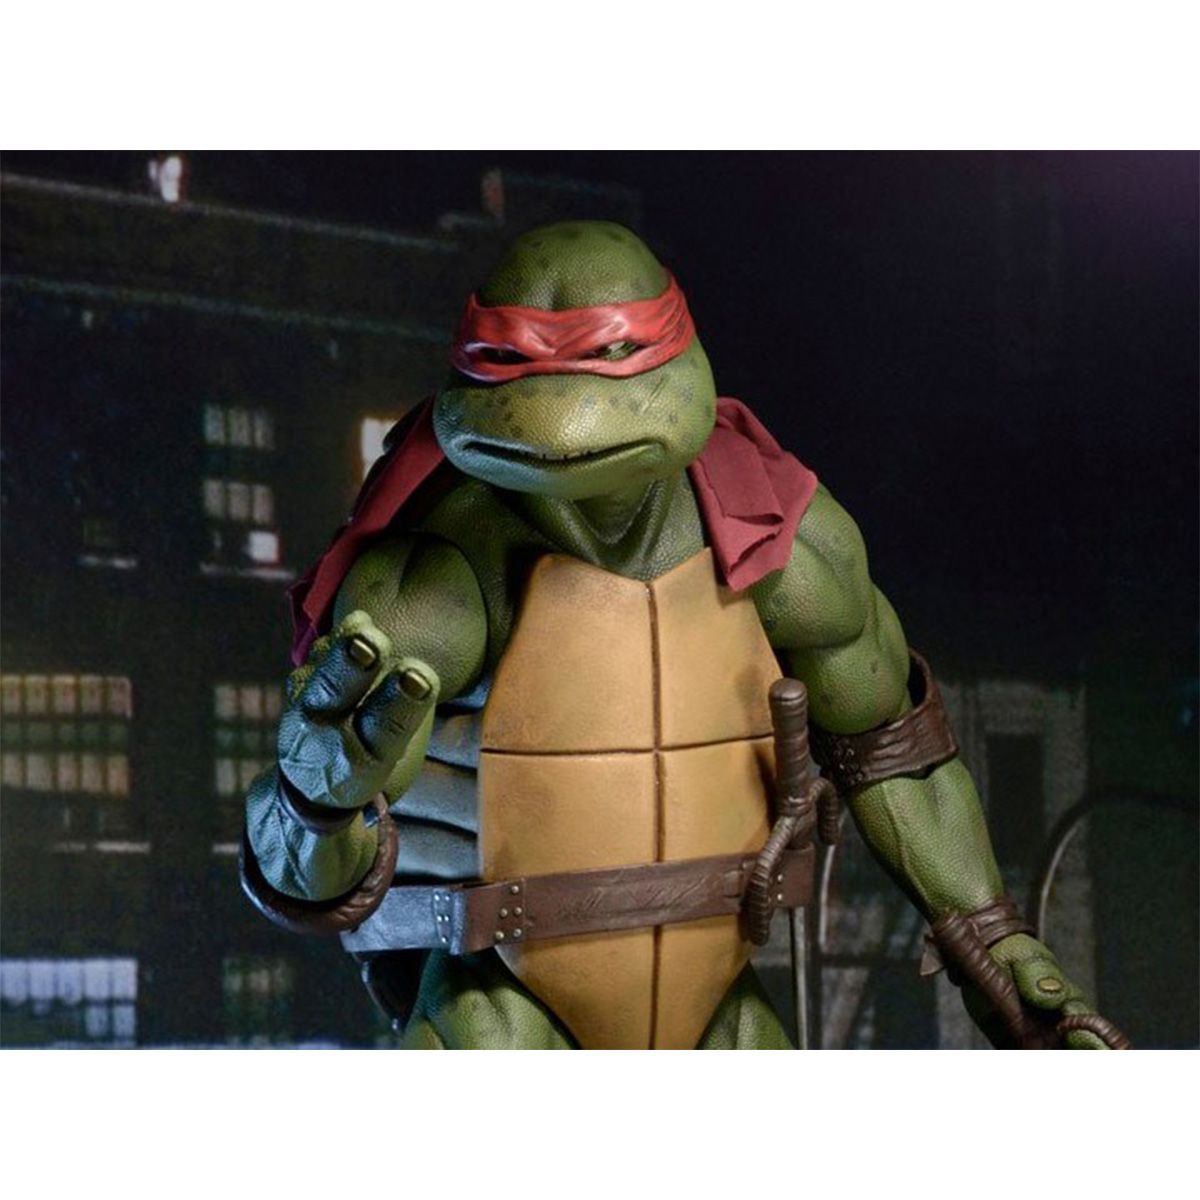 اکشن فیگور نکا مدل لاکپشت های نینجا طرح Turtle Ninja مجموعه 4 عددی -  - 5